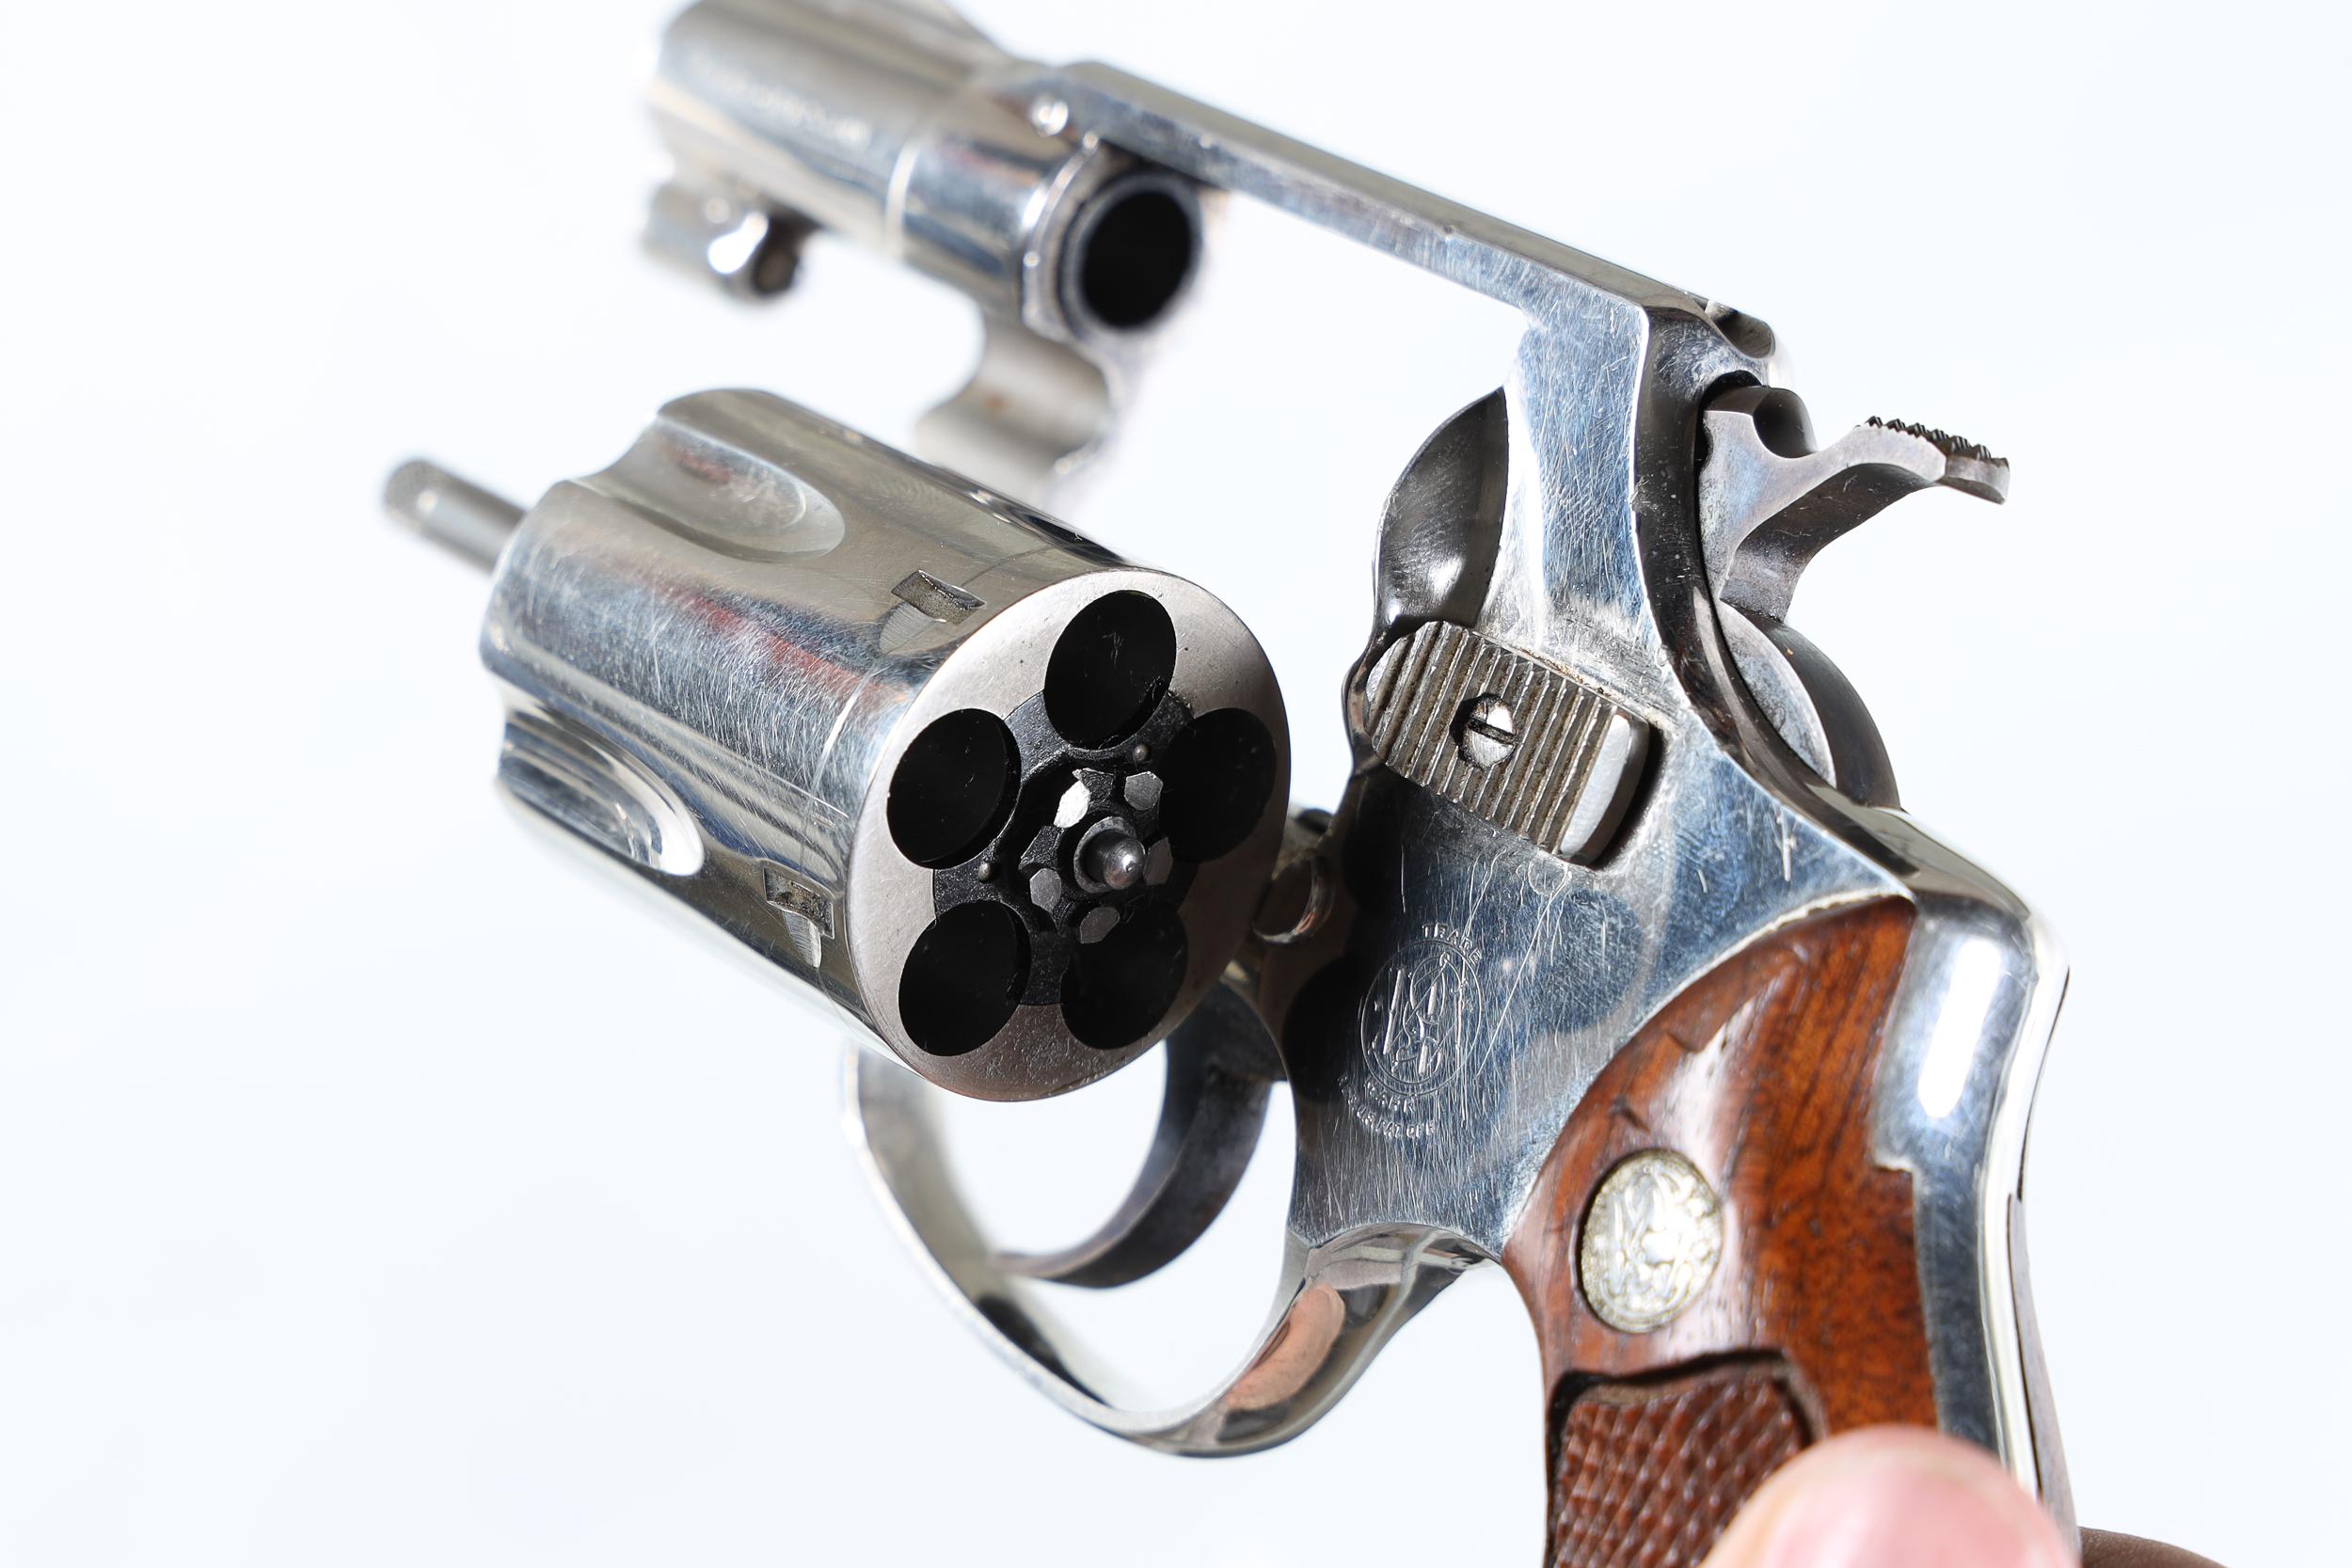 Smith & Wesson 36 Revolver .38 s&w